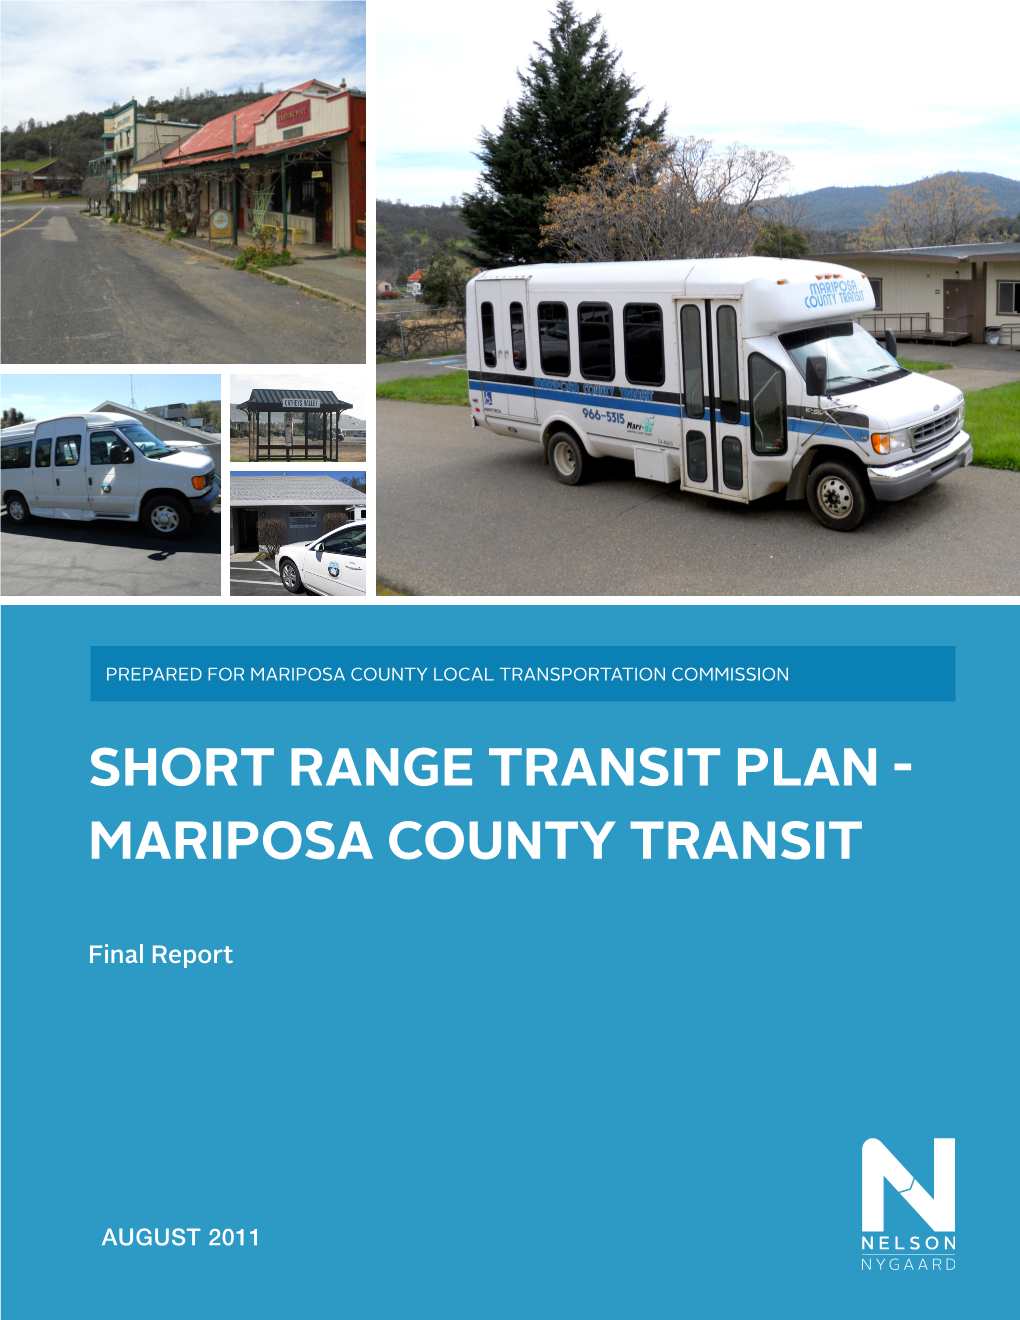 Short Range Transit Plan - Mariposa County Transit